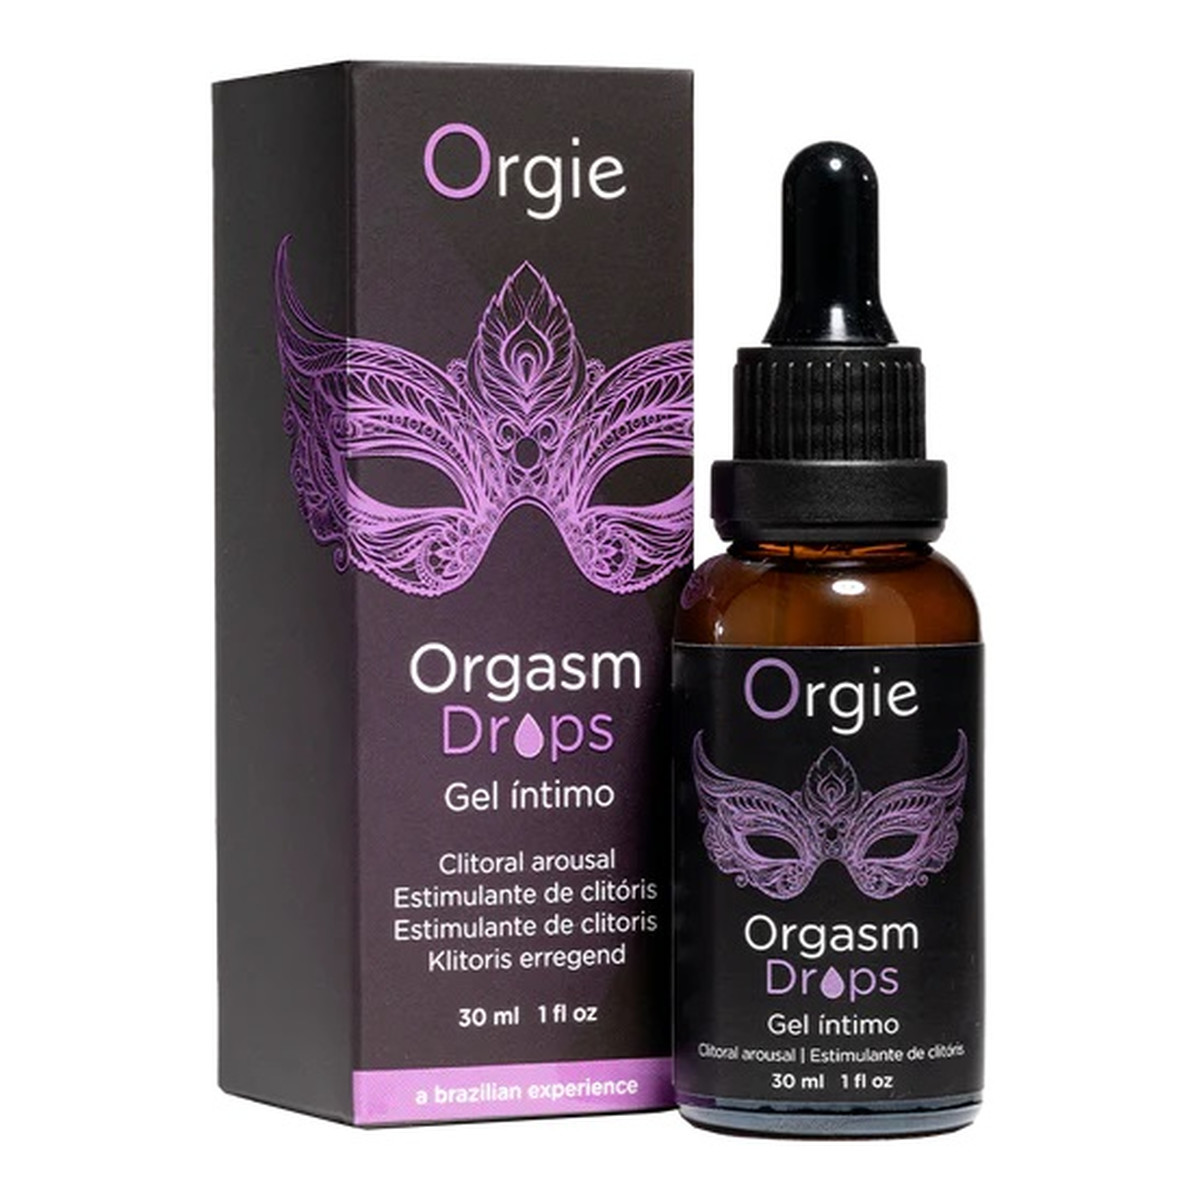 Orgie Orgasm drops intimo krople stymulujące łechtaczkę 30ml